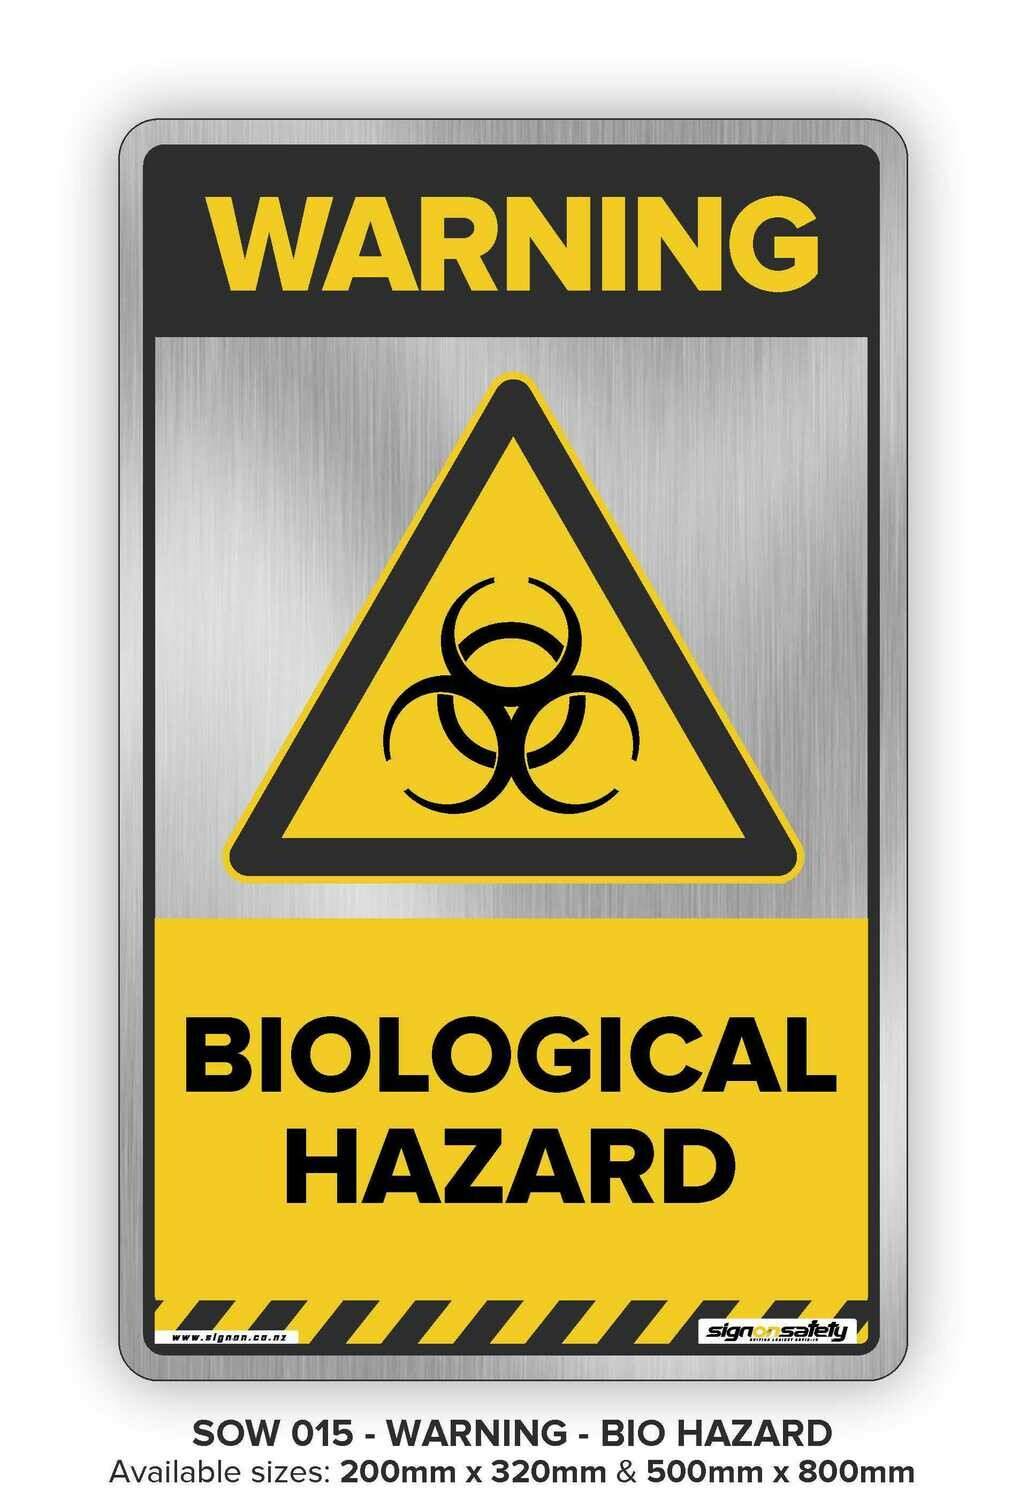 Warning - Biological Hazard